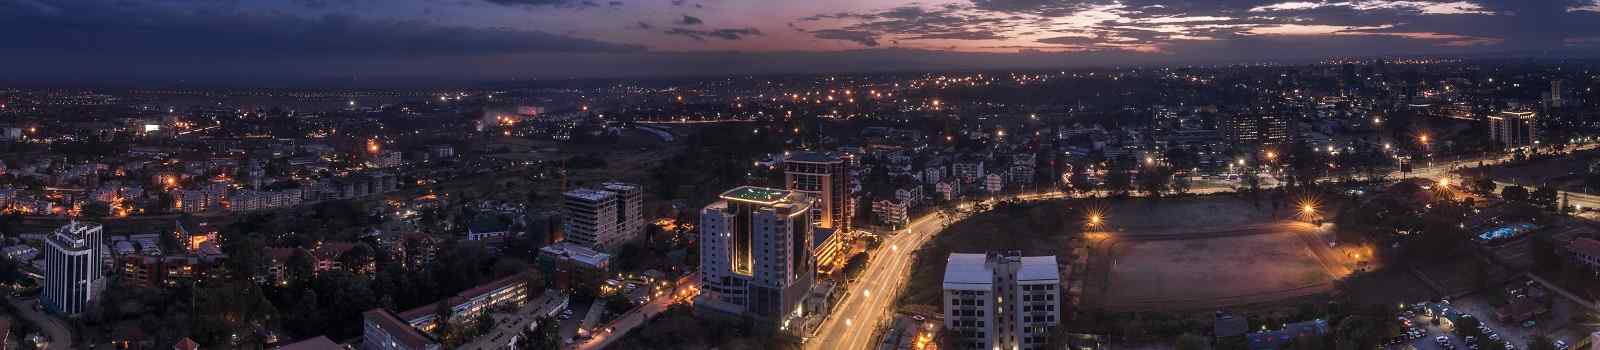 KL-SA-GORILLAS-WILDPARKS Panoramabild von Nairobi - Hauptstadt Kenias  Ostafrika - Bild shutterstock 1406526158